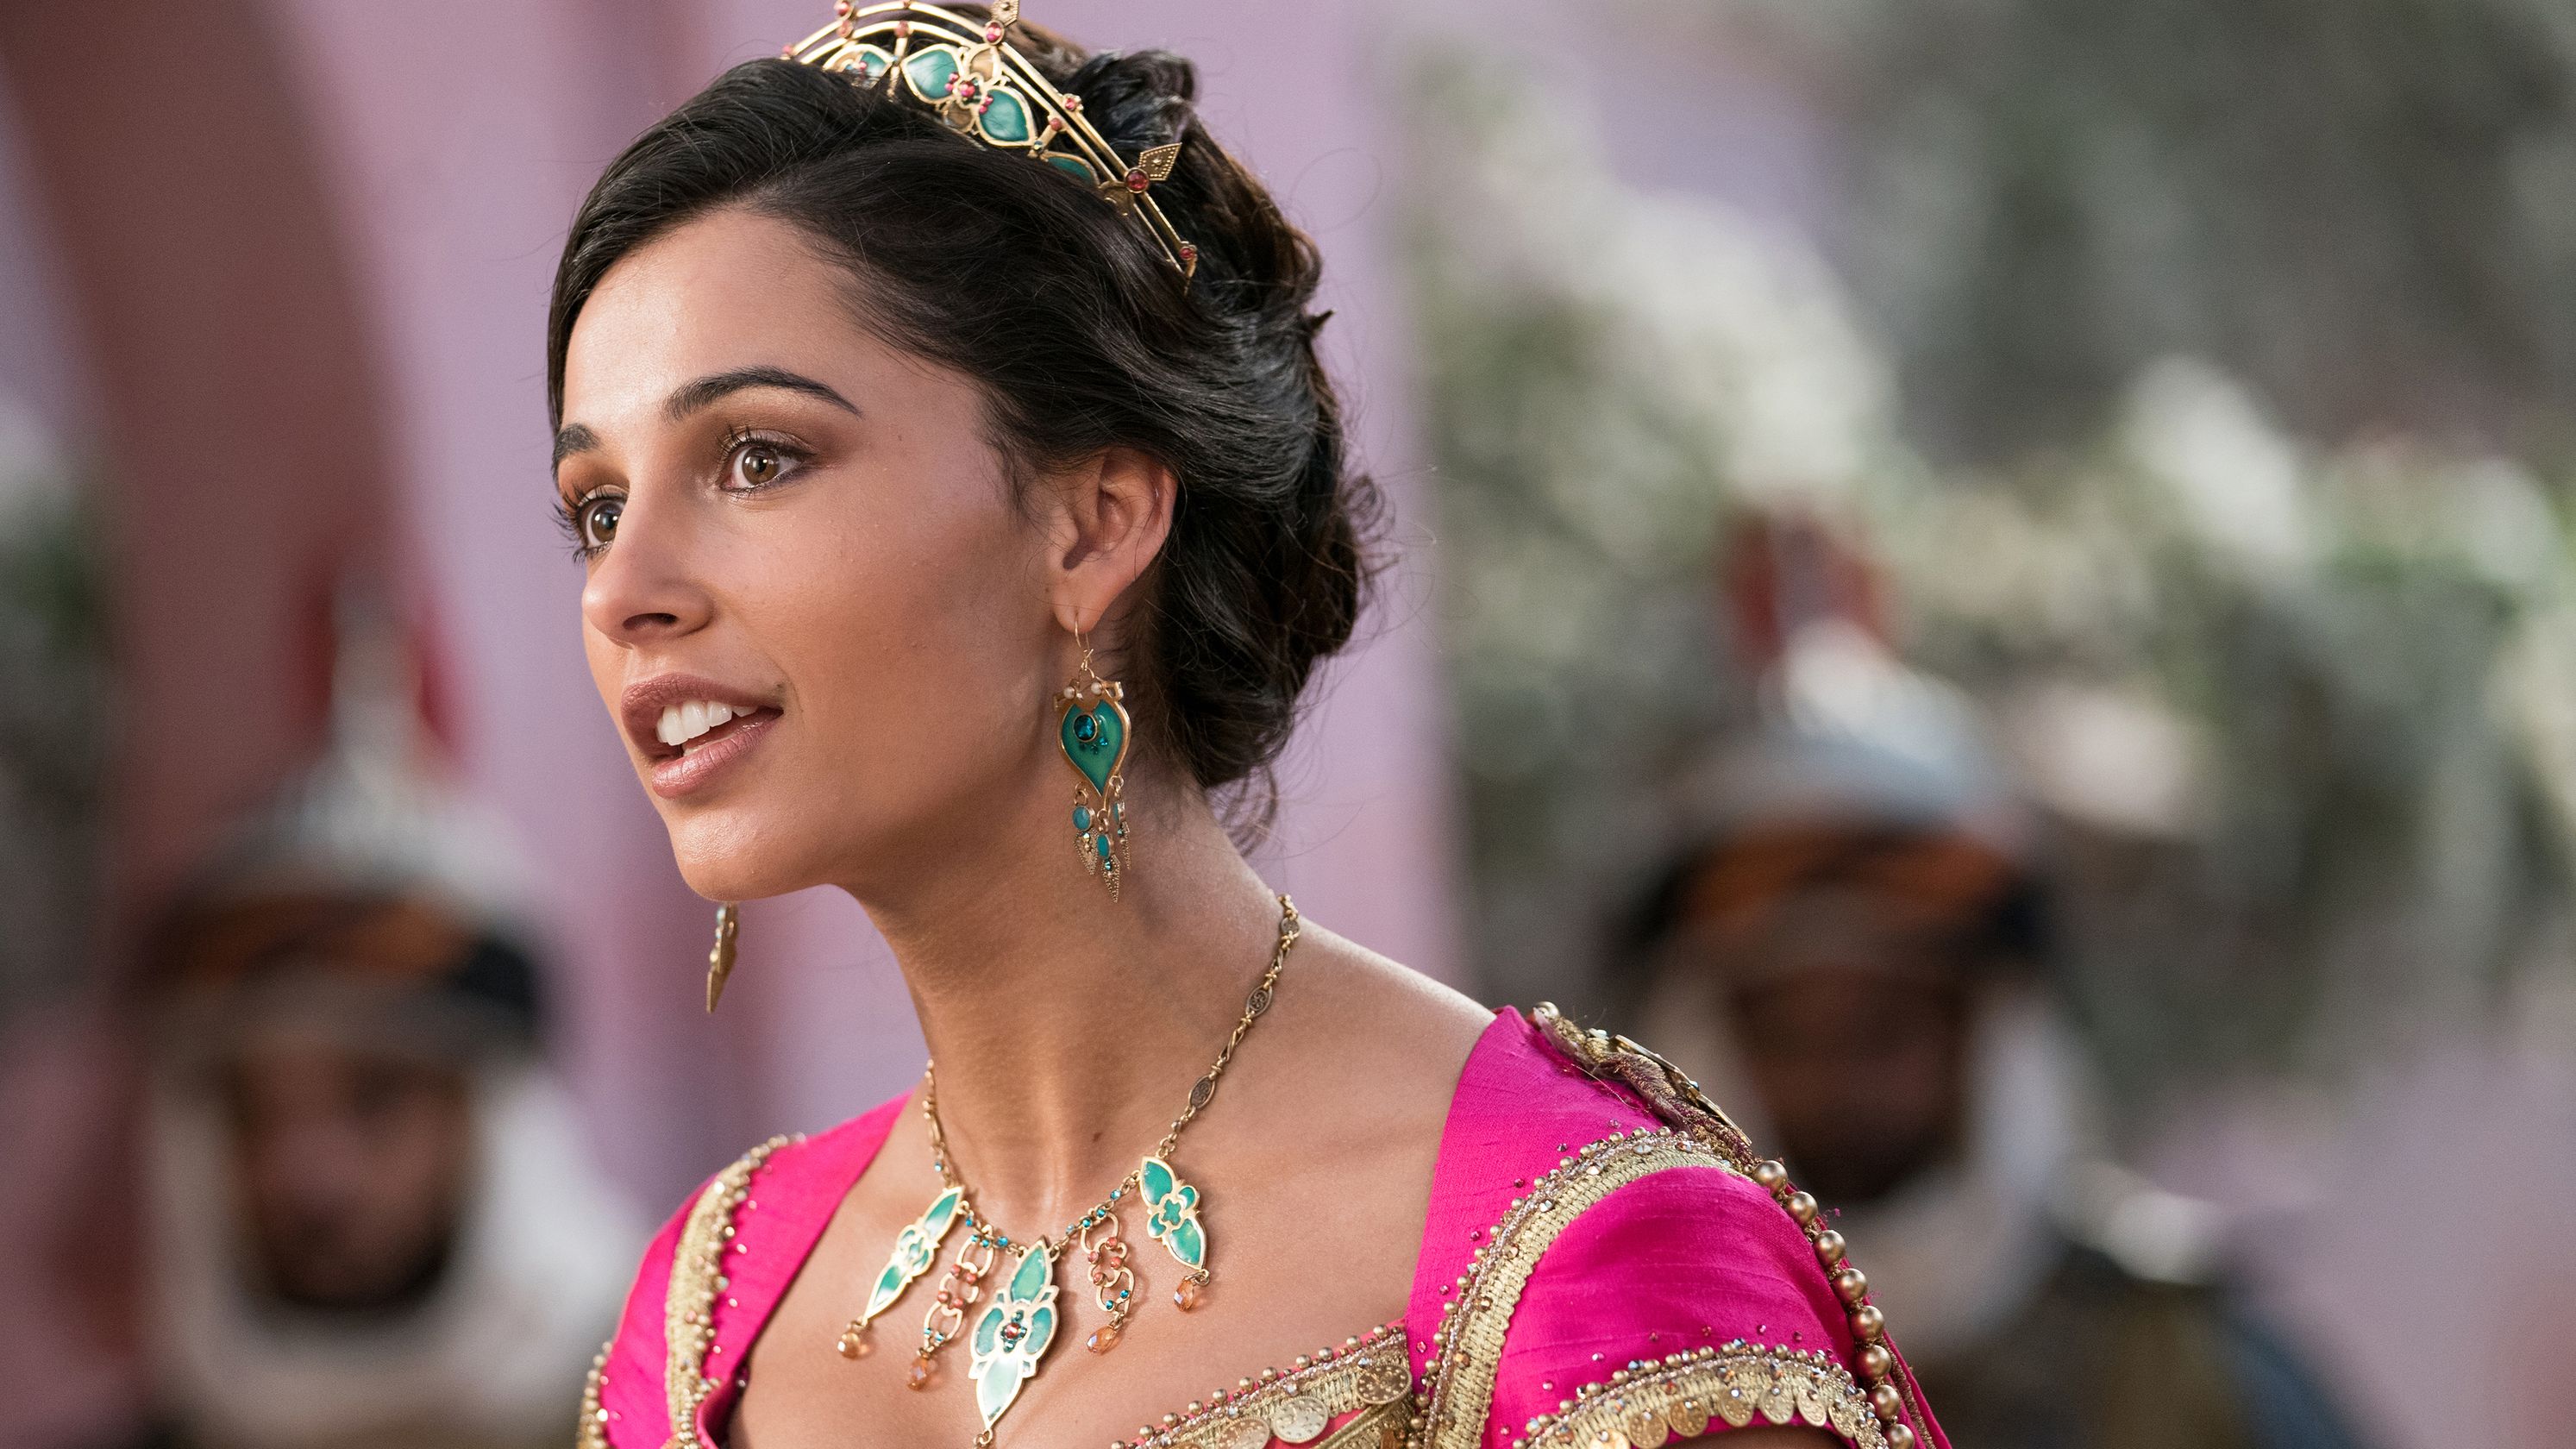 Novas fotos de Aladdin detalham figurino de Jasmine